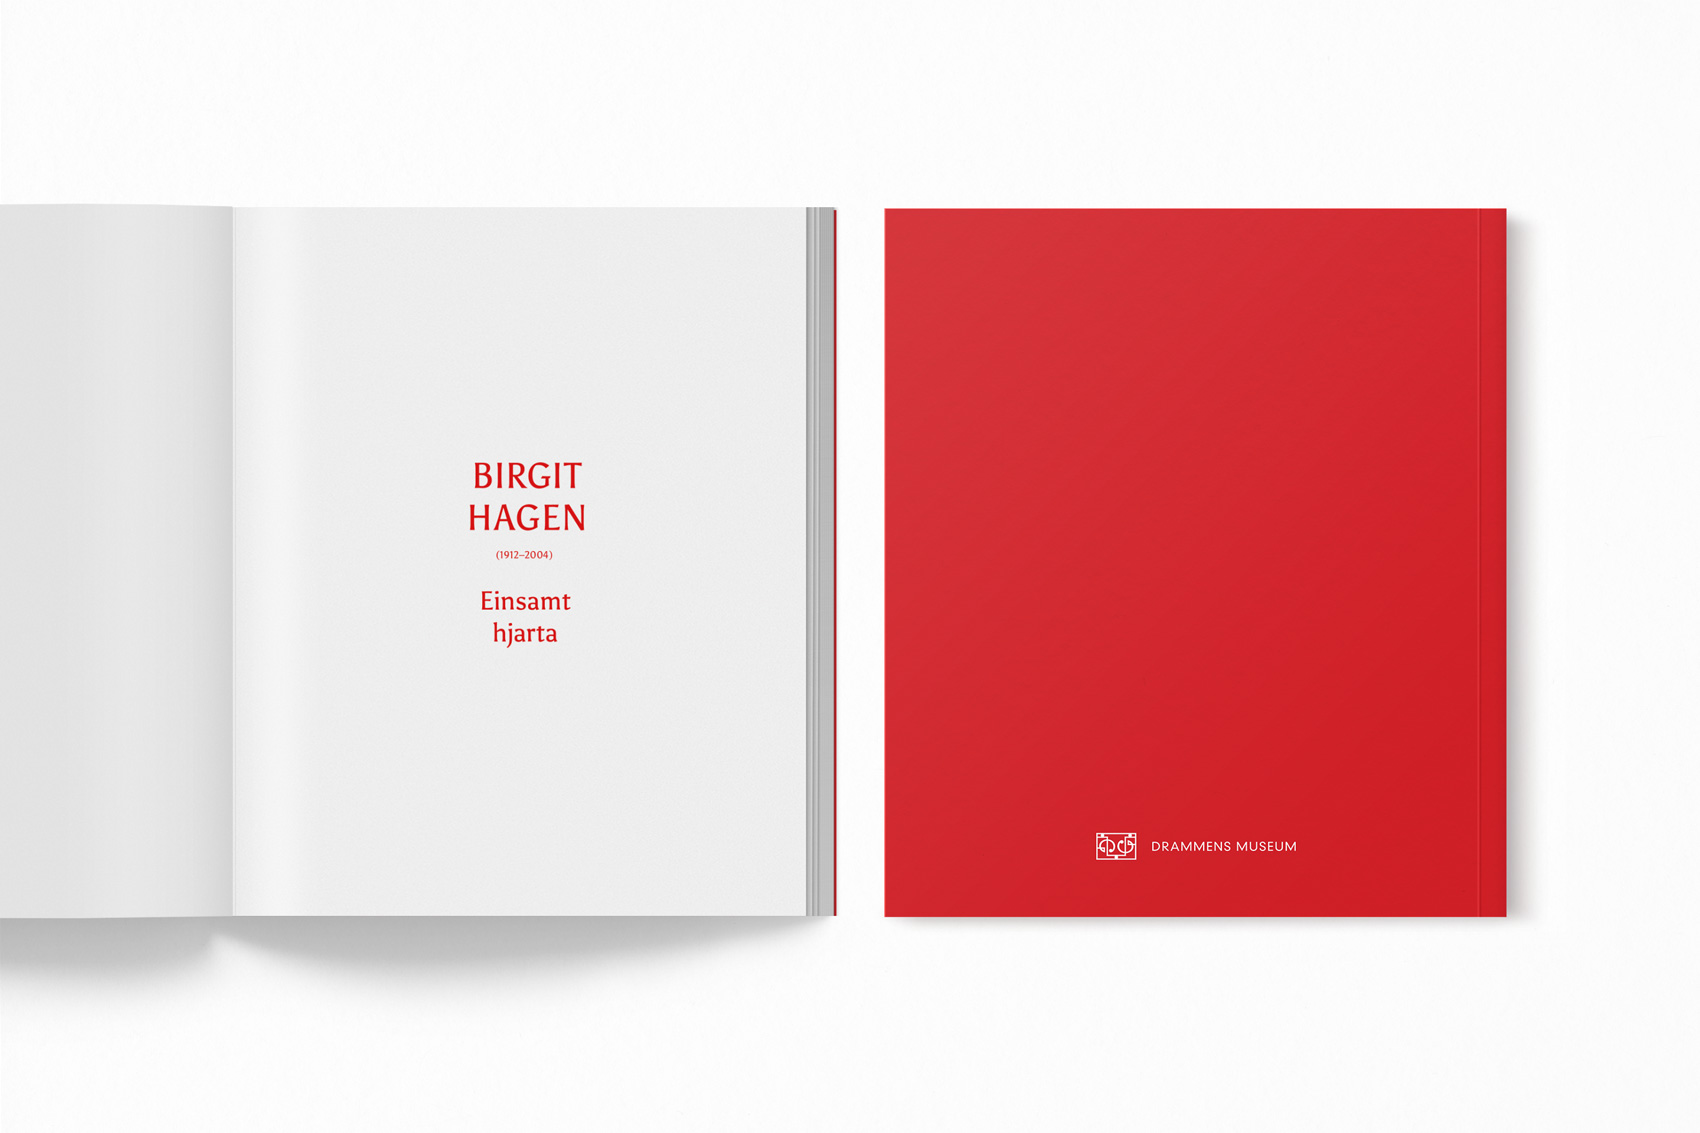 Visual identity for Birgit Hagen's exhibition - catalogue